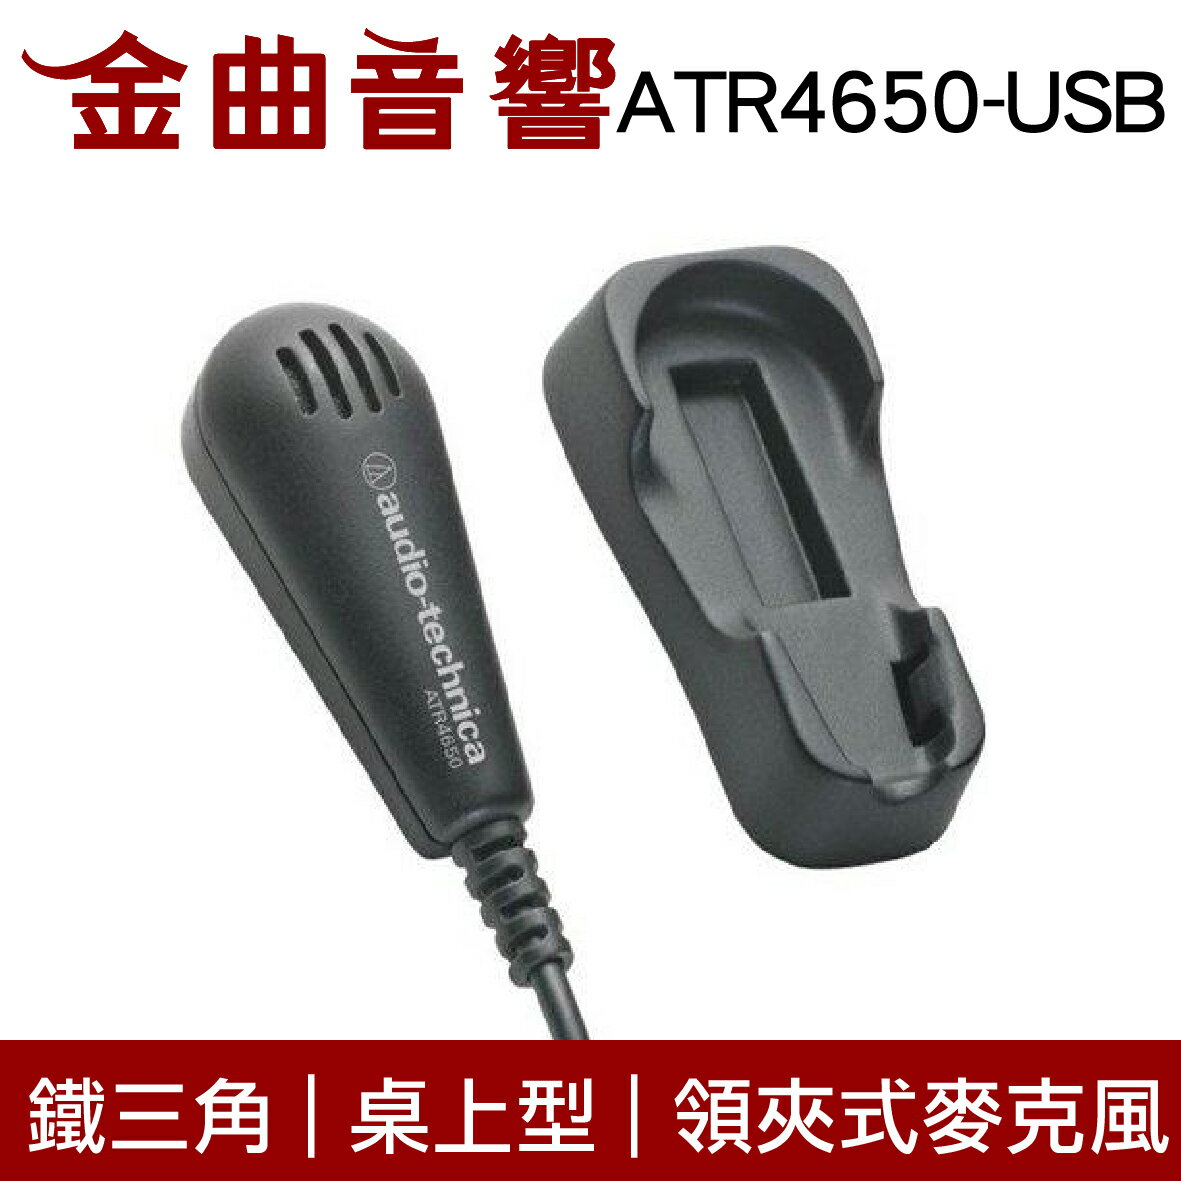 鐵三角 ATR4650-USB 數位 電容型 桌上型 領夾 全指向性 麥克風 | 金曲音響